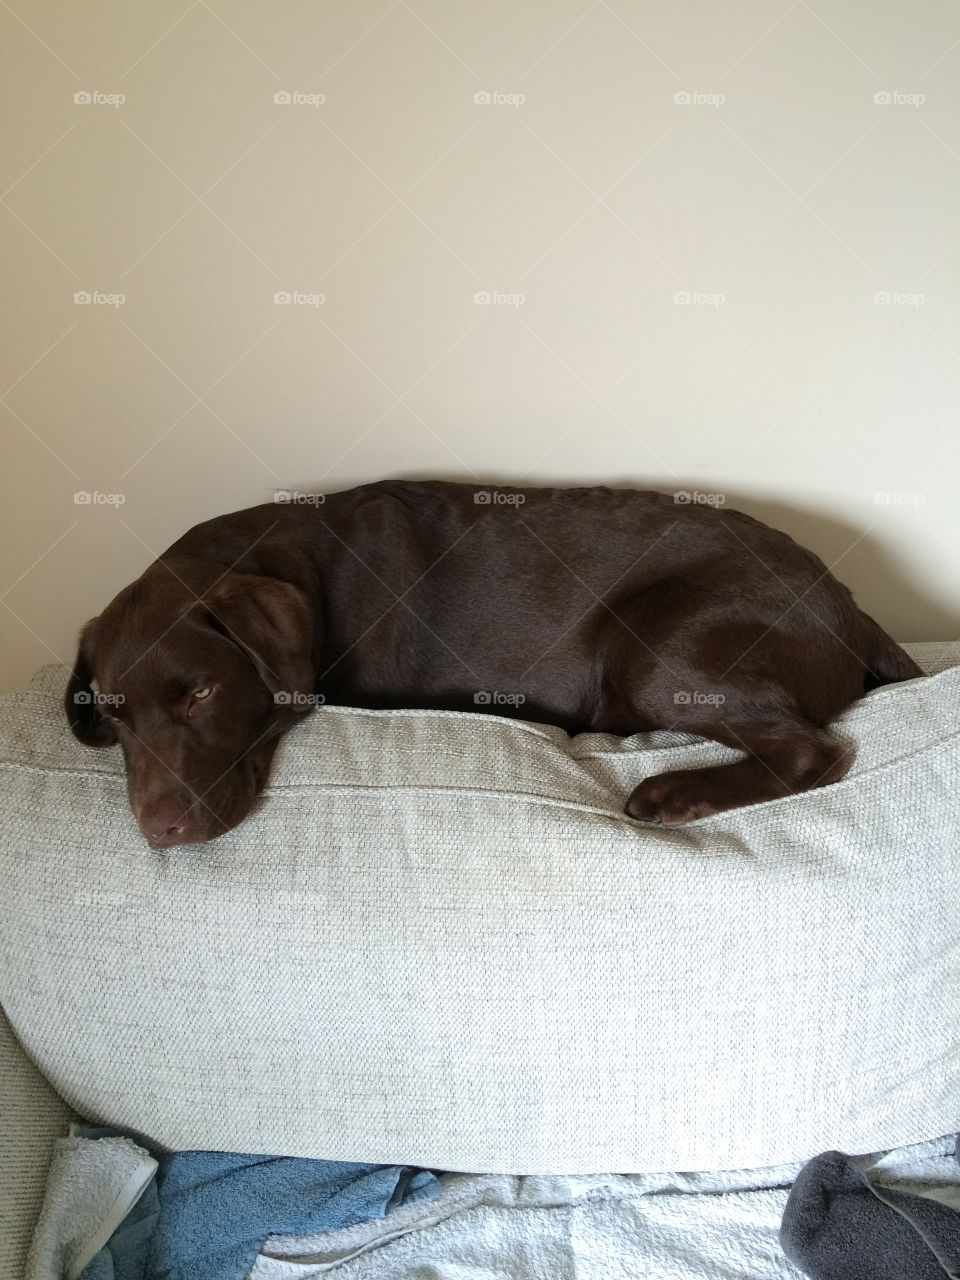 Brown Chocolate Labrador dog lying on sofa chair back